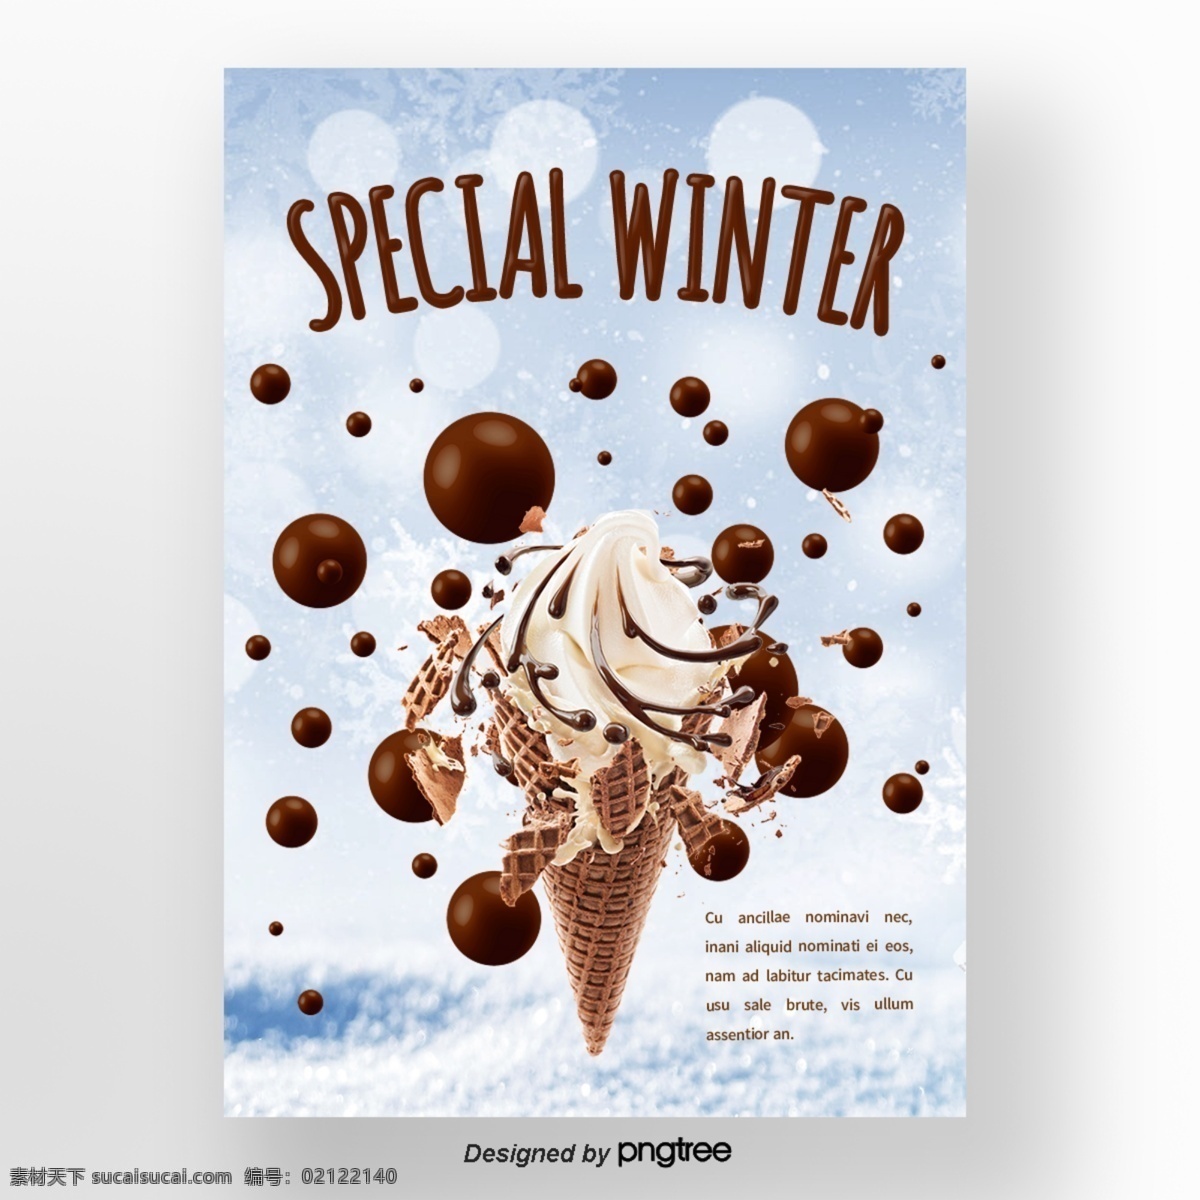 褐色 巧克力 冰激凌 蓝色 眼睛 版 冬季 甜味 食品 海报 n 冬天 雪花儿 美味的冬天 元